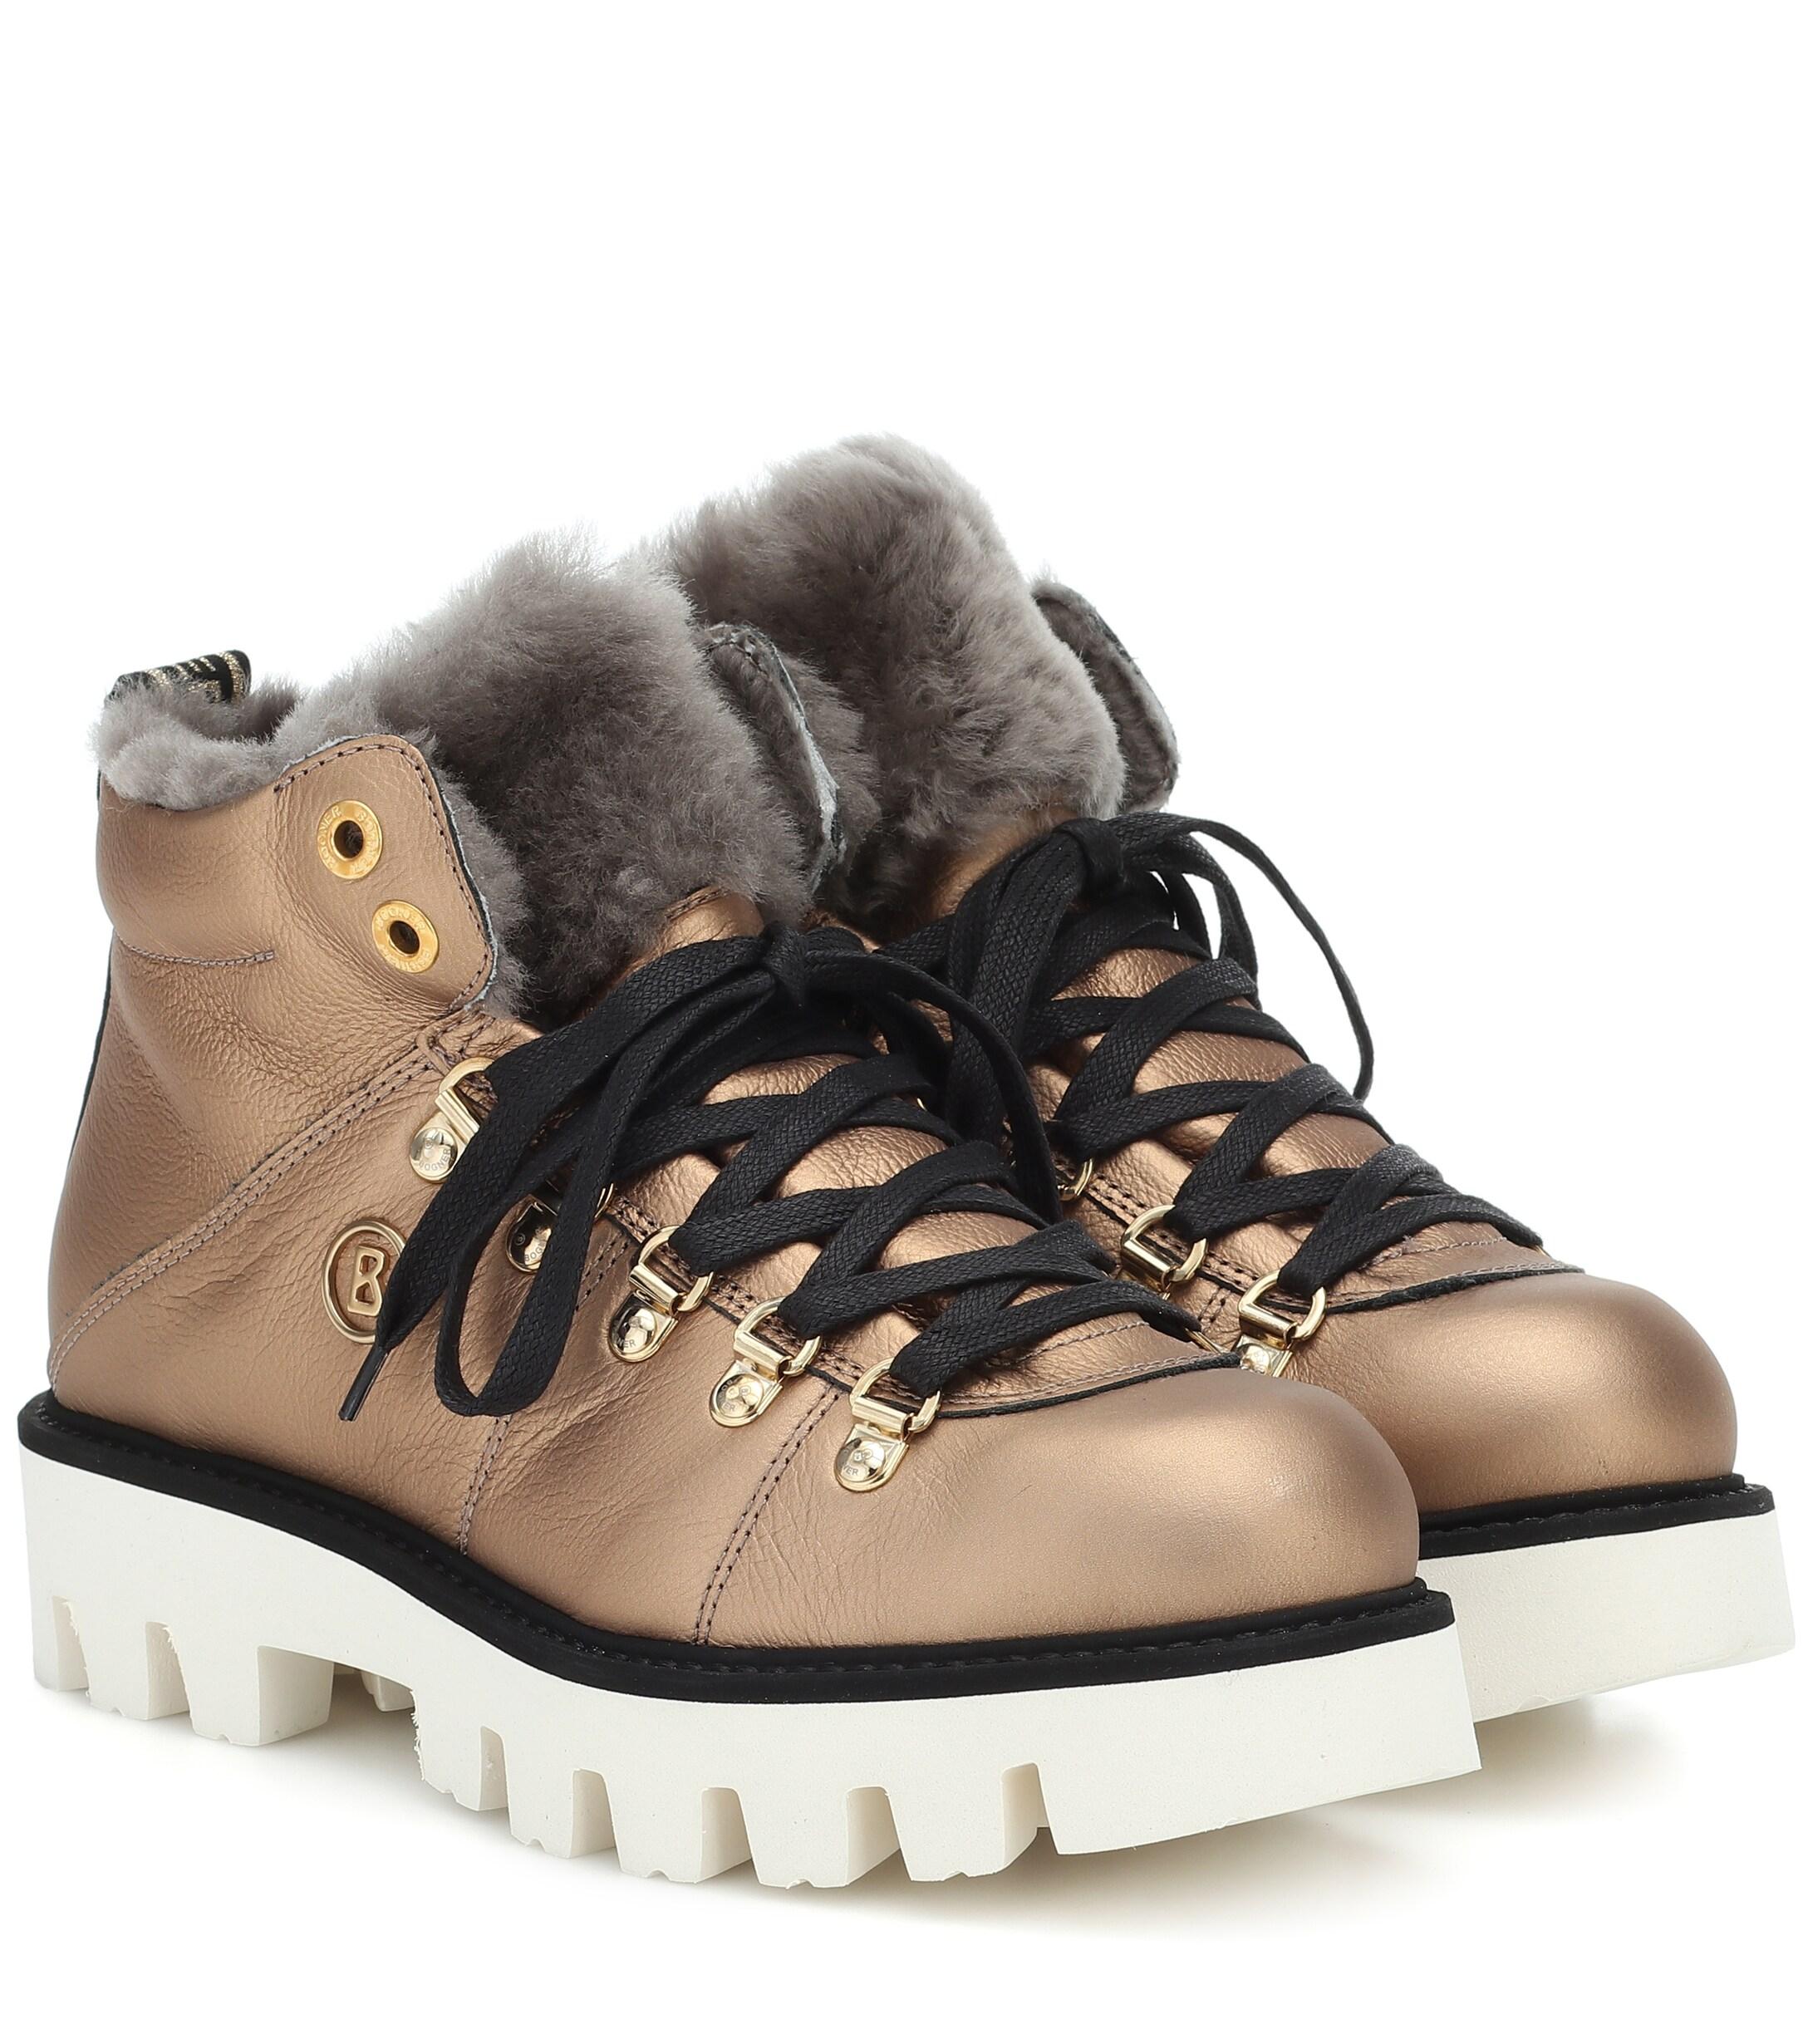 Bogner Copenhagen Leather Snow Boots in Metallic - Lyst